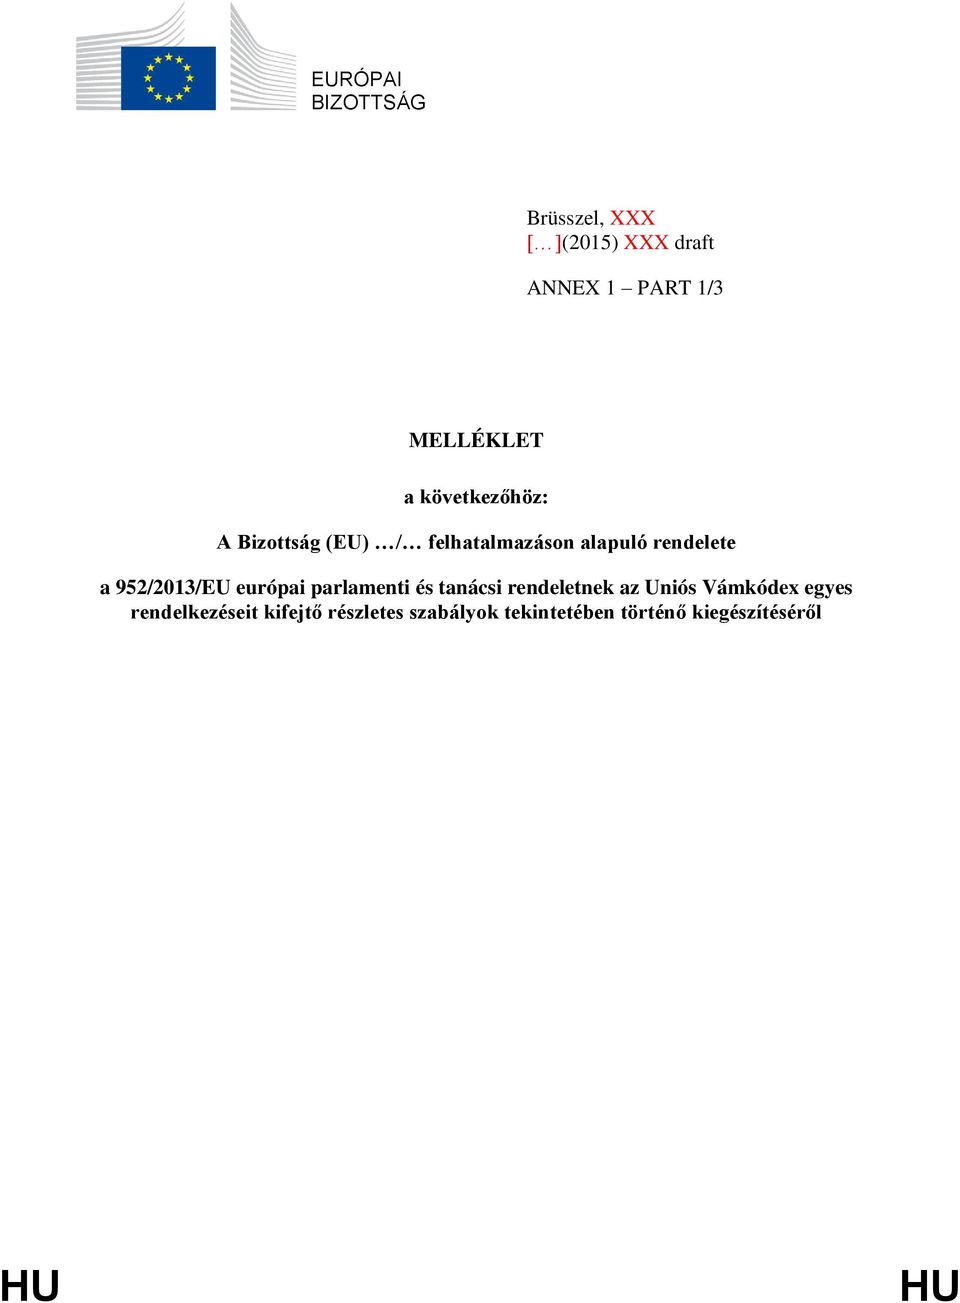 952/2013/EU európai parlamenti és tanácsi rendeletnek az Uniós Vámkódex